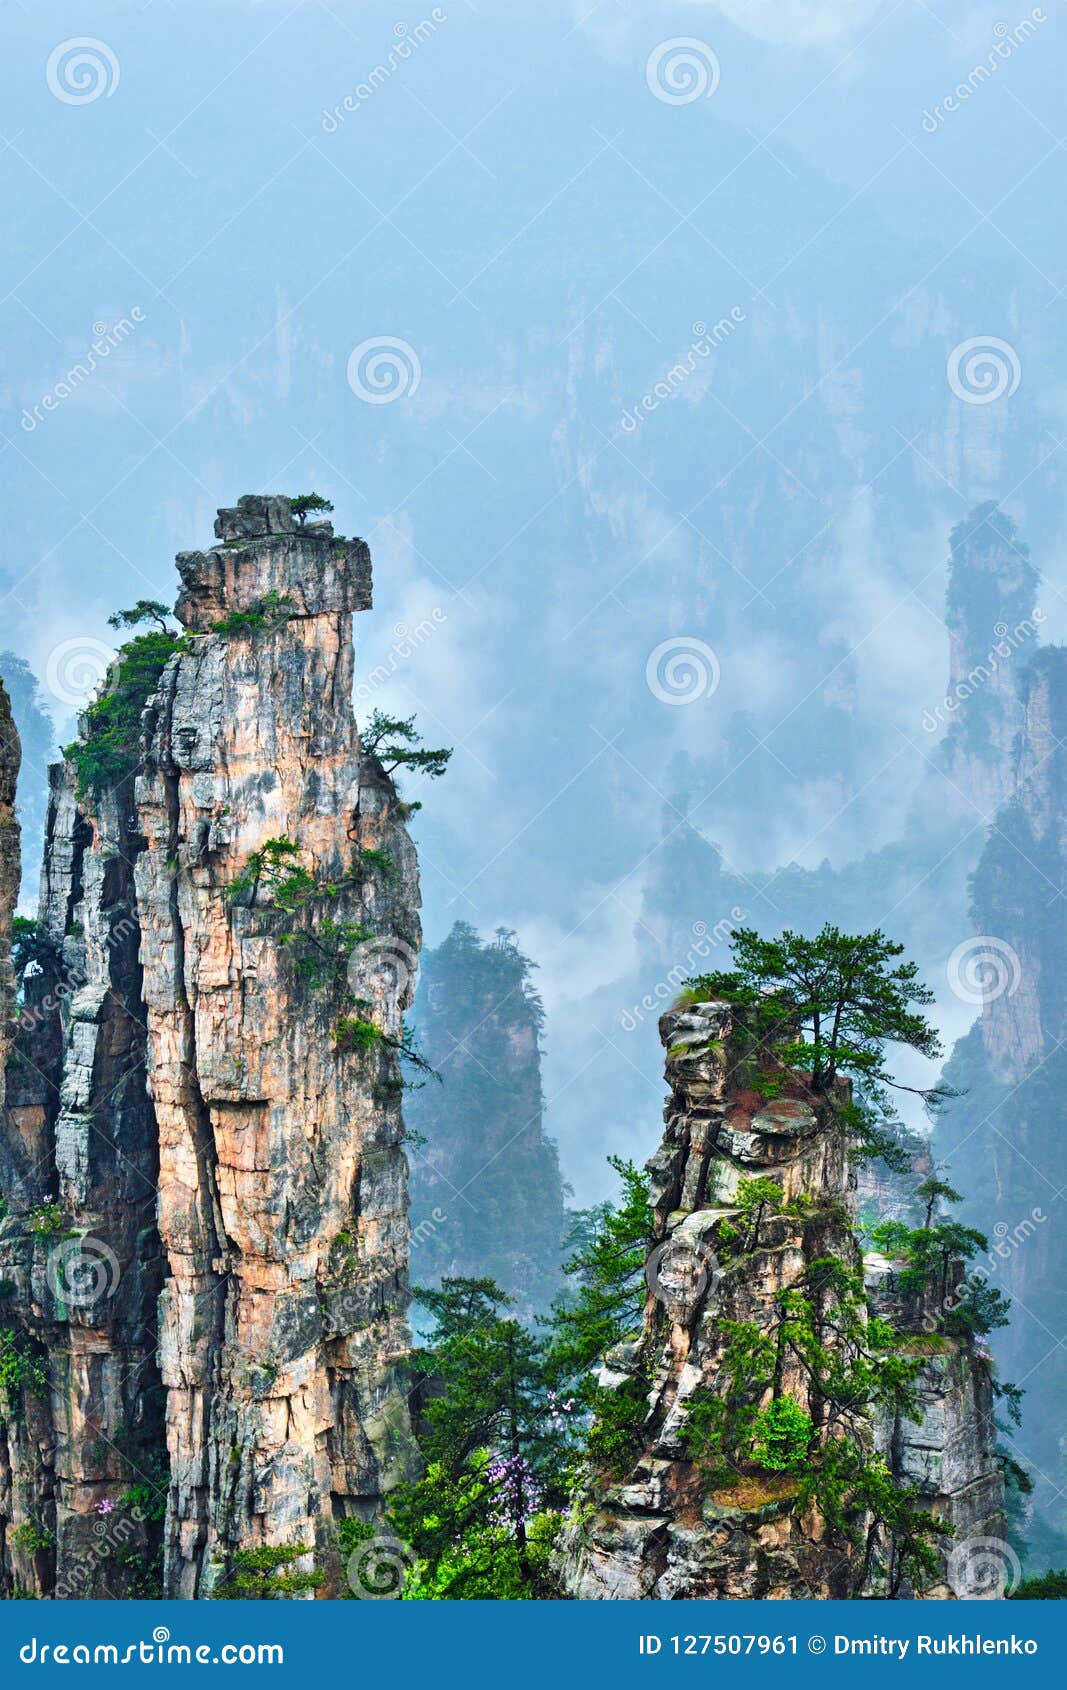 zhangjiajie mountains, china